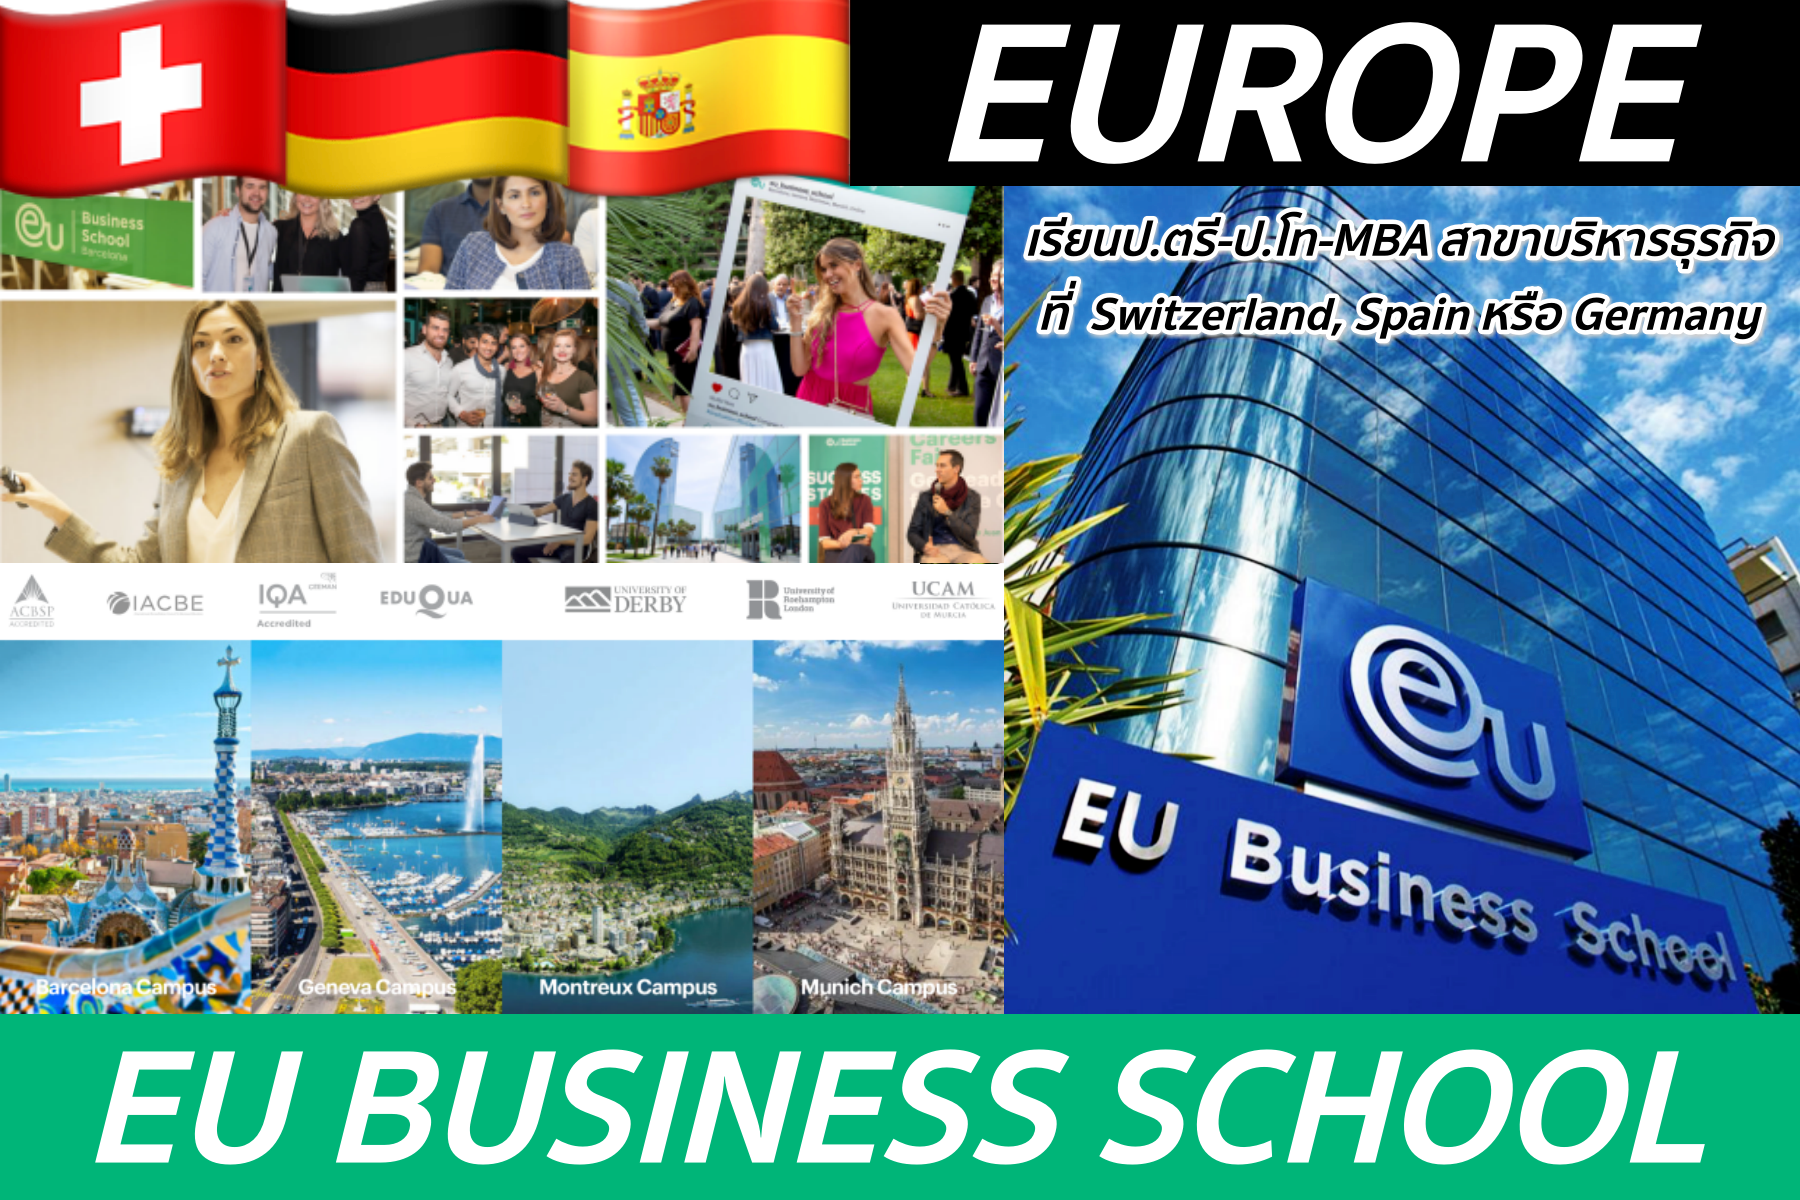 ป.ตรี-ป.โท-MBA สาขาบริหารธุรกิจที่ EU Business School ที่สวิส เยอรมัน สเปน เรียนเป็นภาษาอังกฤษ 100%